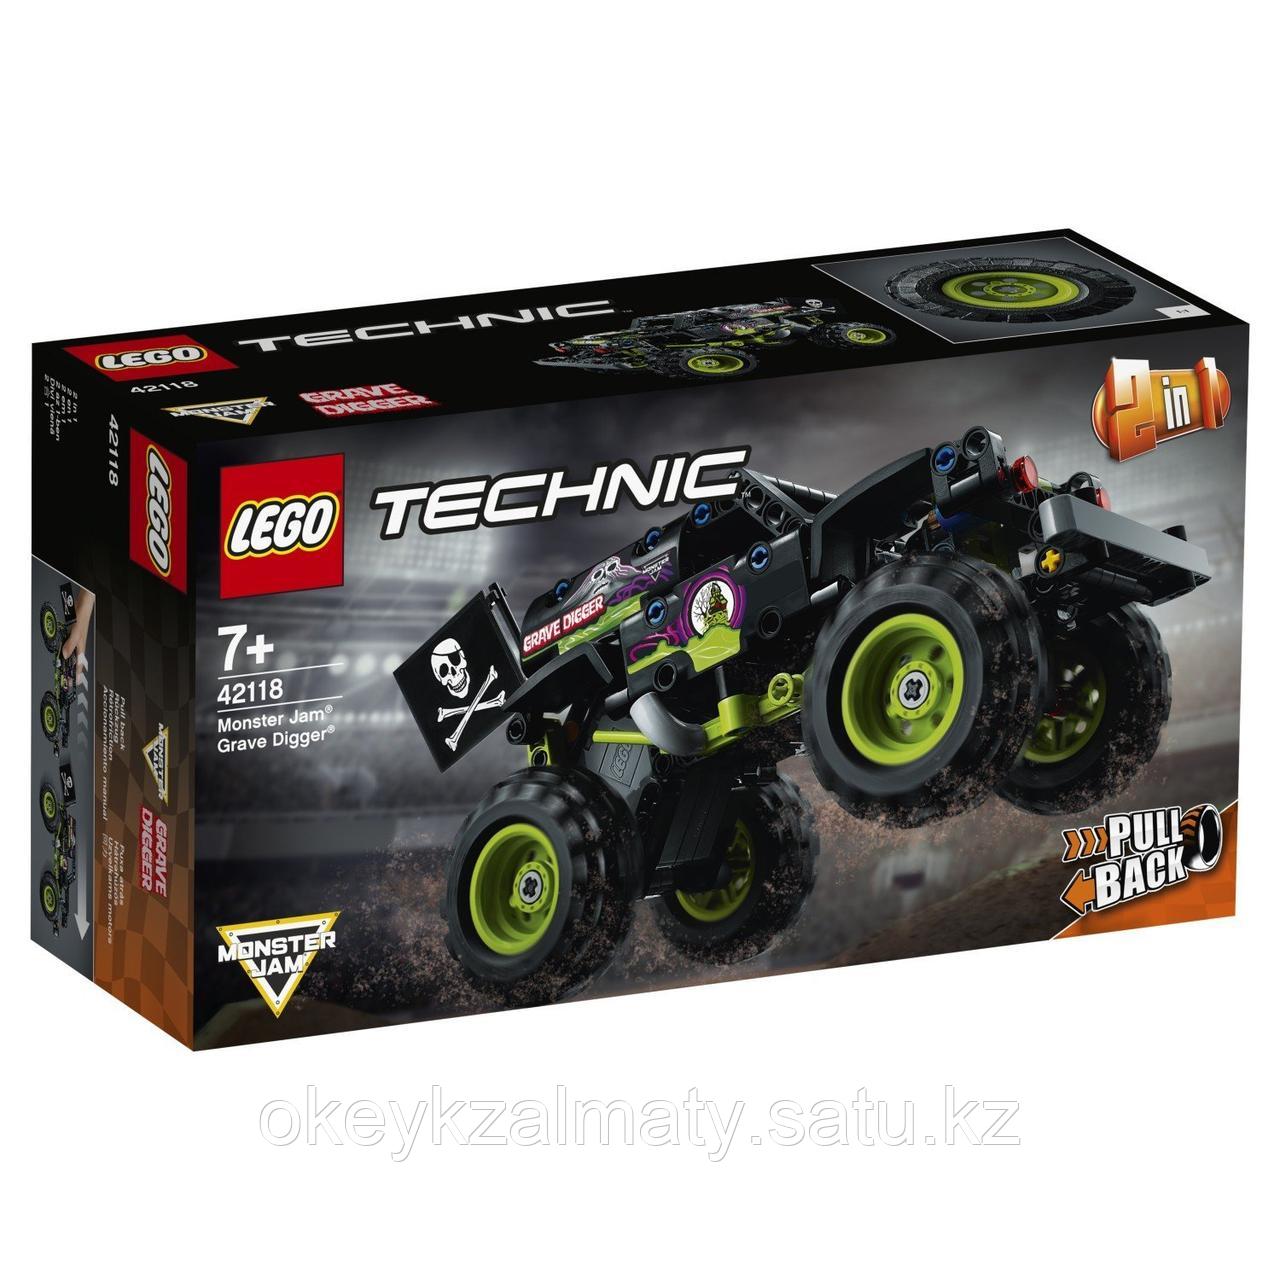 LEGO Technic: Monster Jam Grave Digger 42118